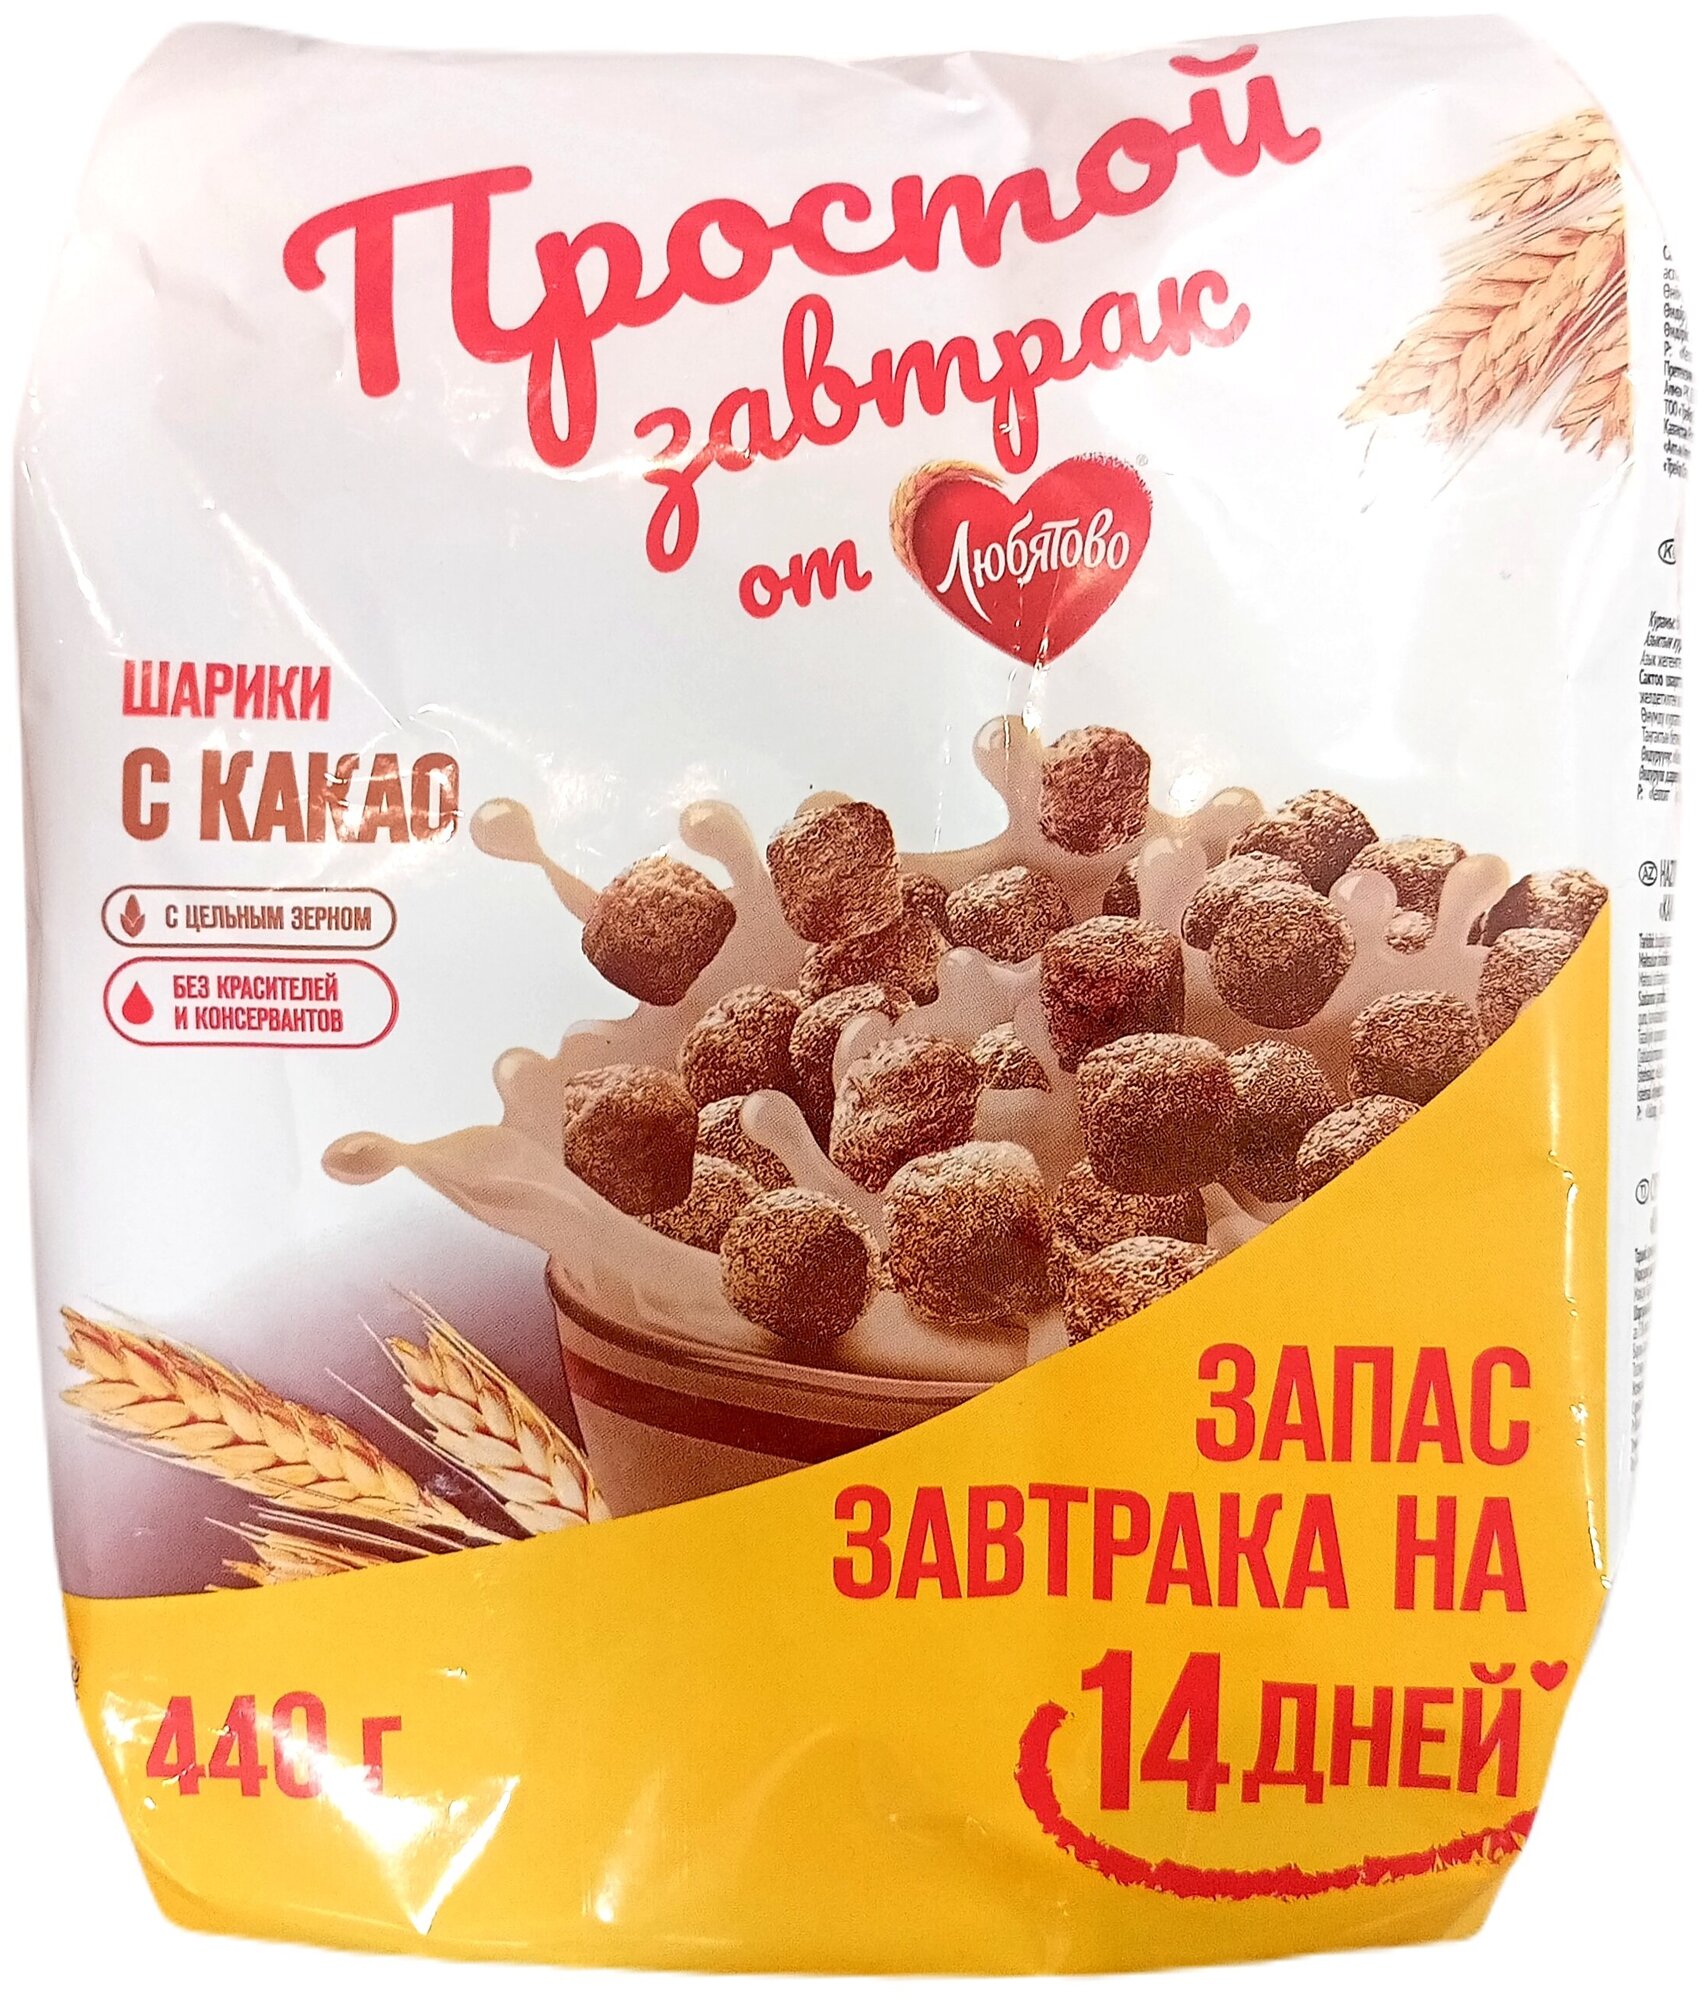 Готовый завтрак от Любятово, шарики с какао с цельным зерном, 440 г - фотография № 1